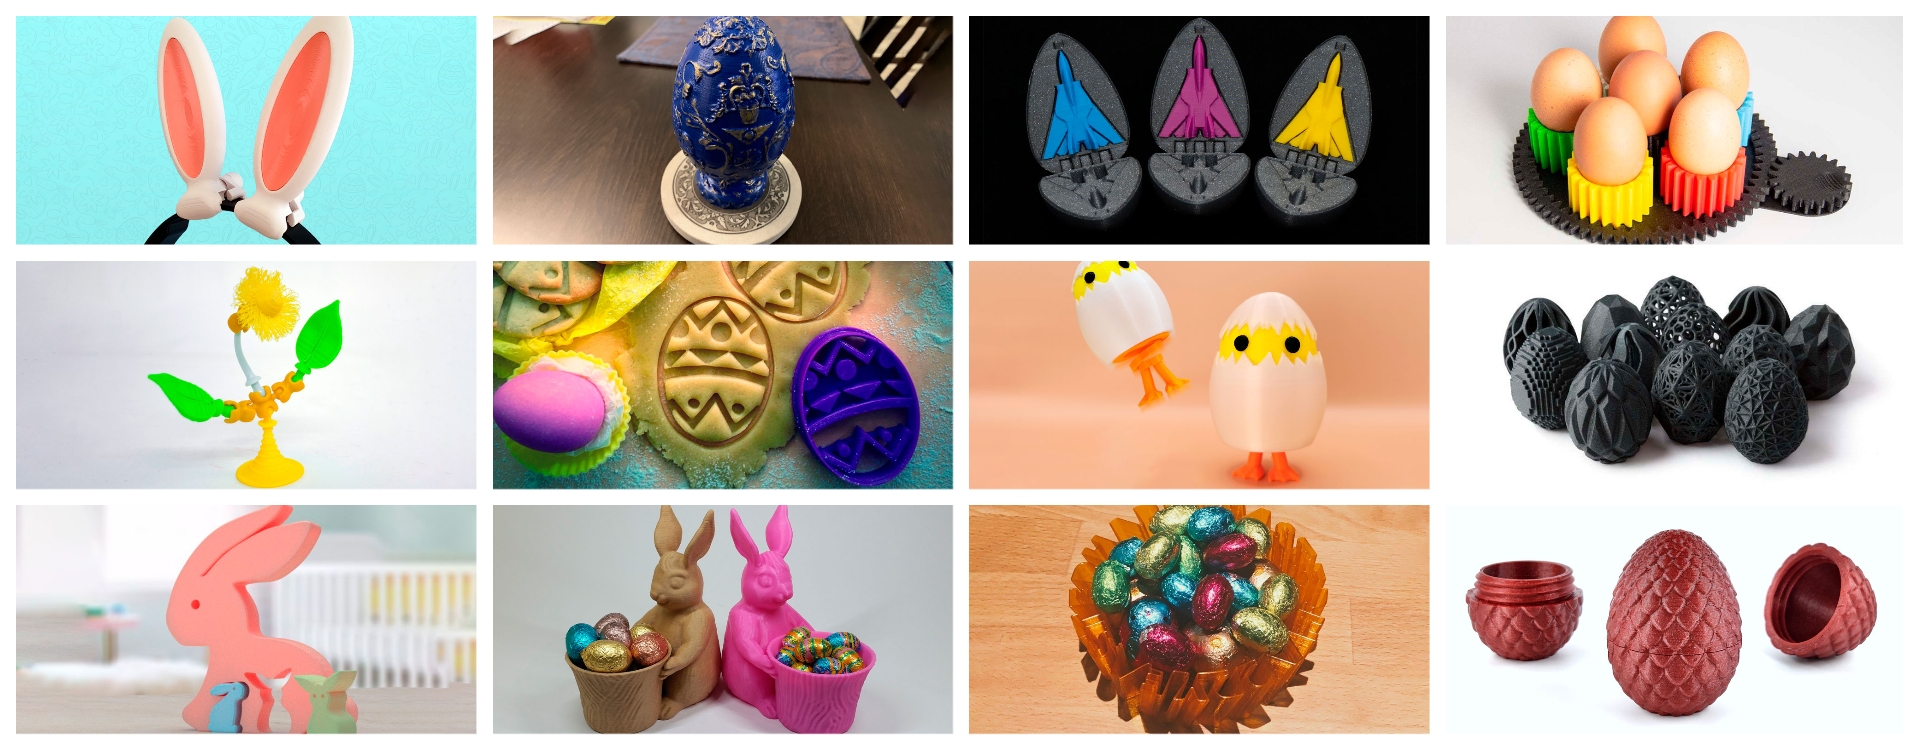 12 идей для печати на 3D принтере к Пасхе: бесплатные модели для украшения праздника